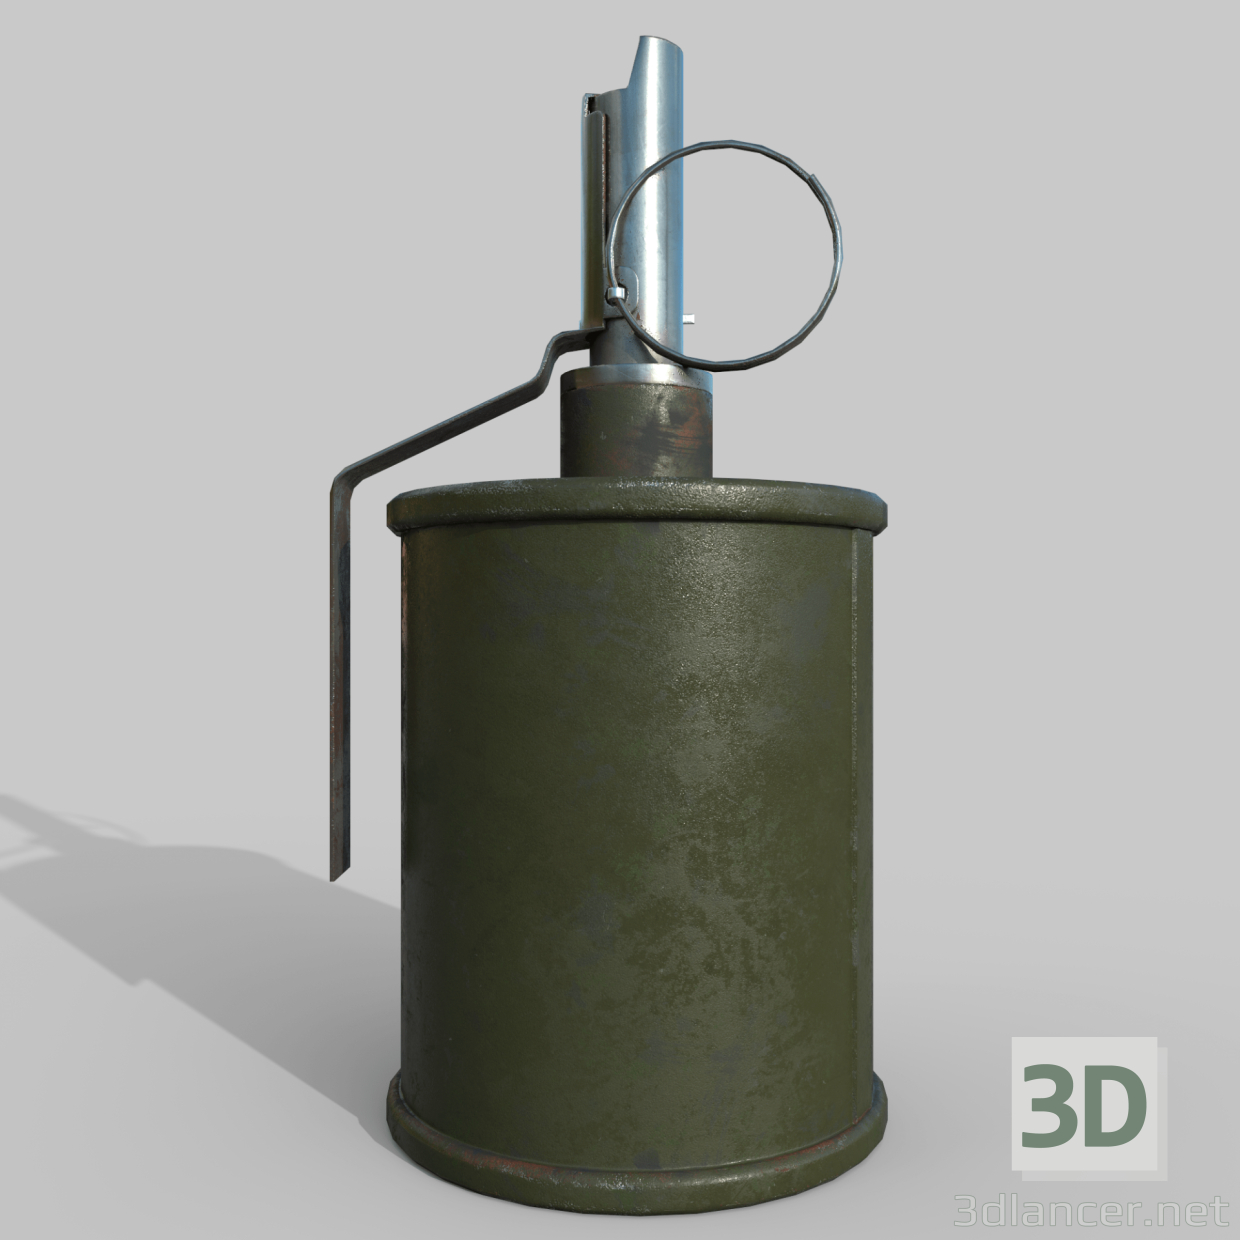 3d Grenade RG-42 model buy - render